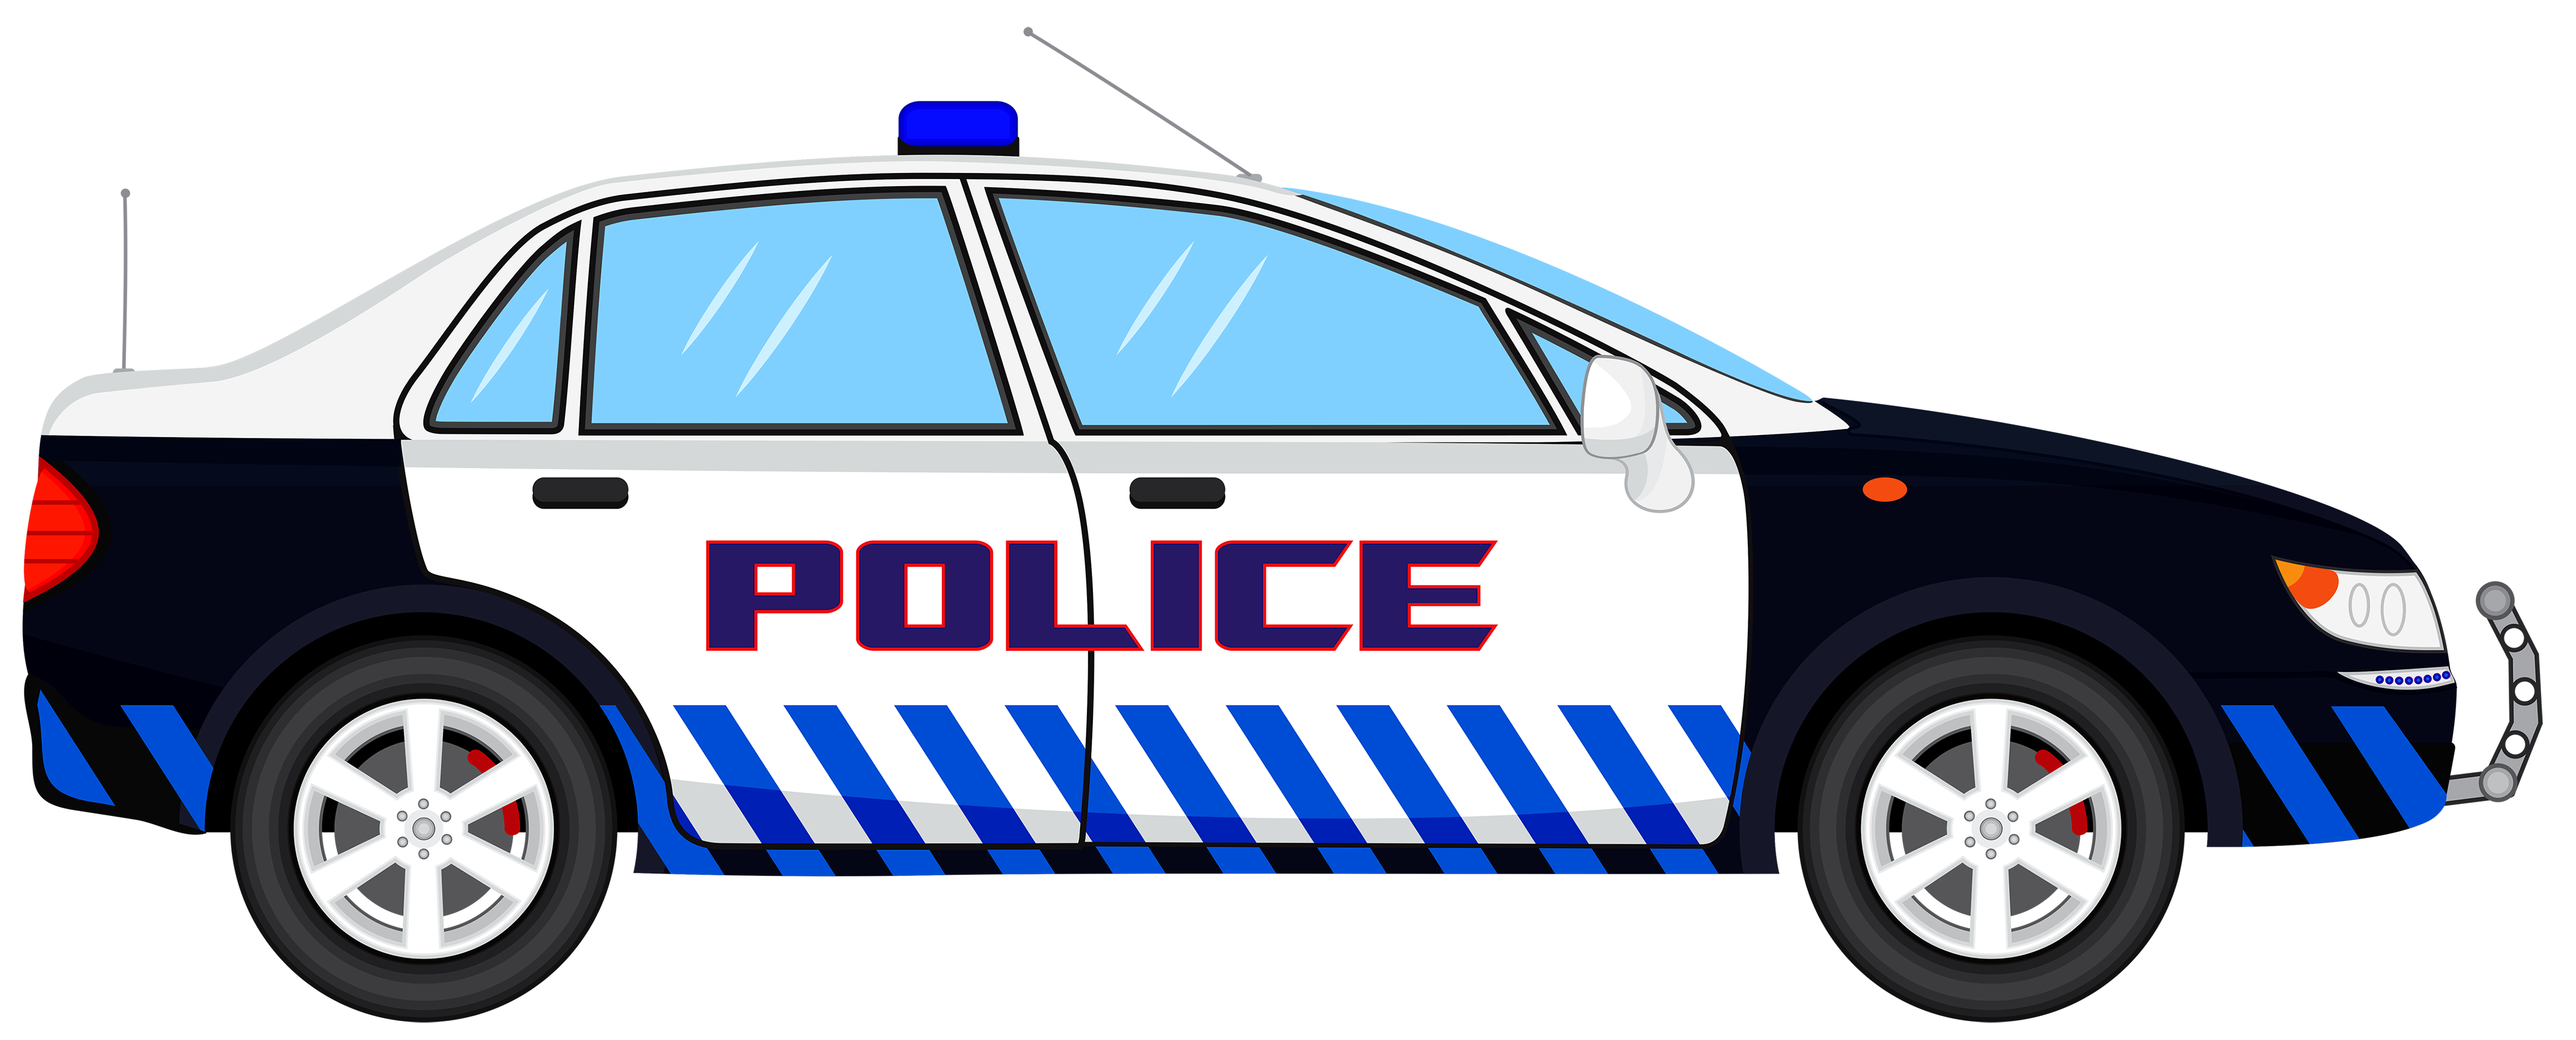 animated clip art police car - photo #15